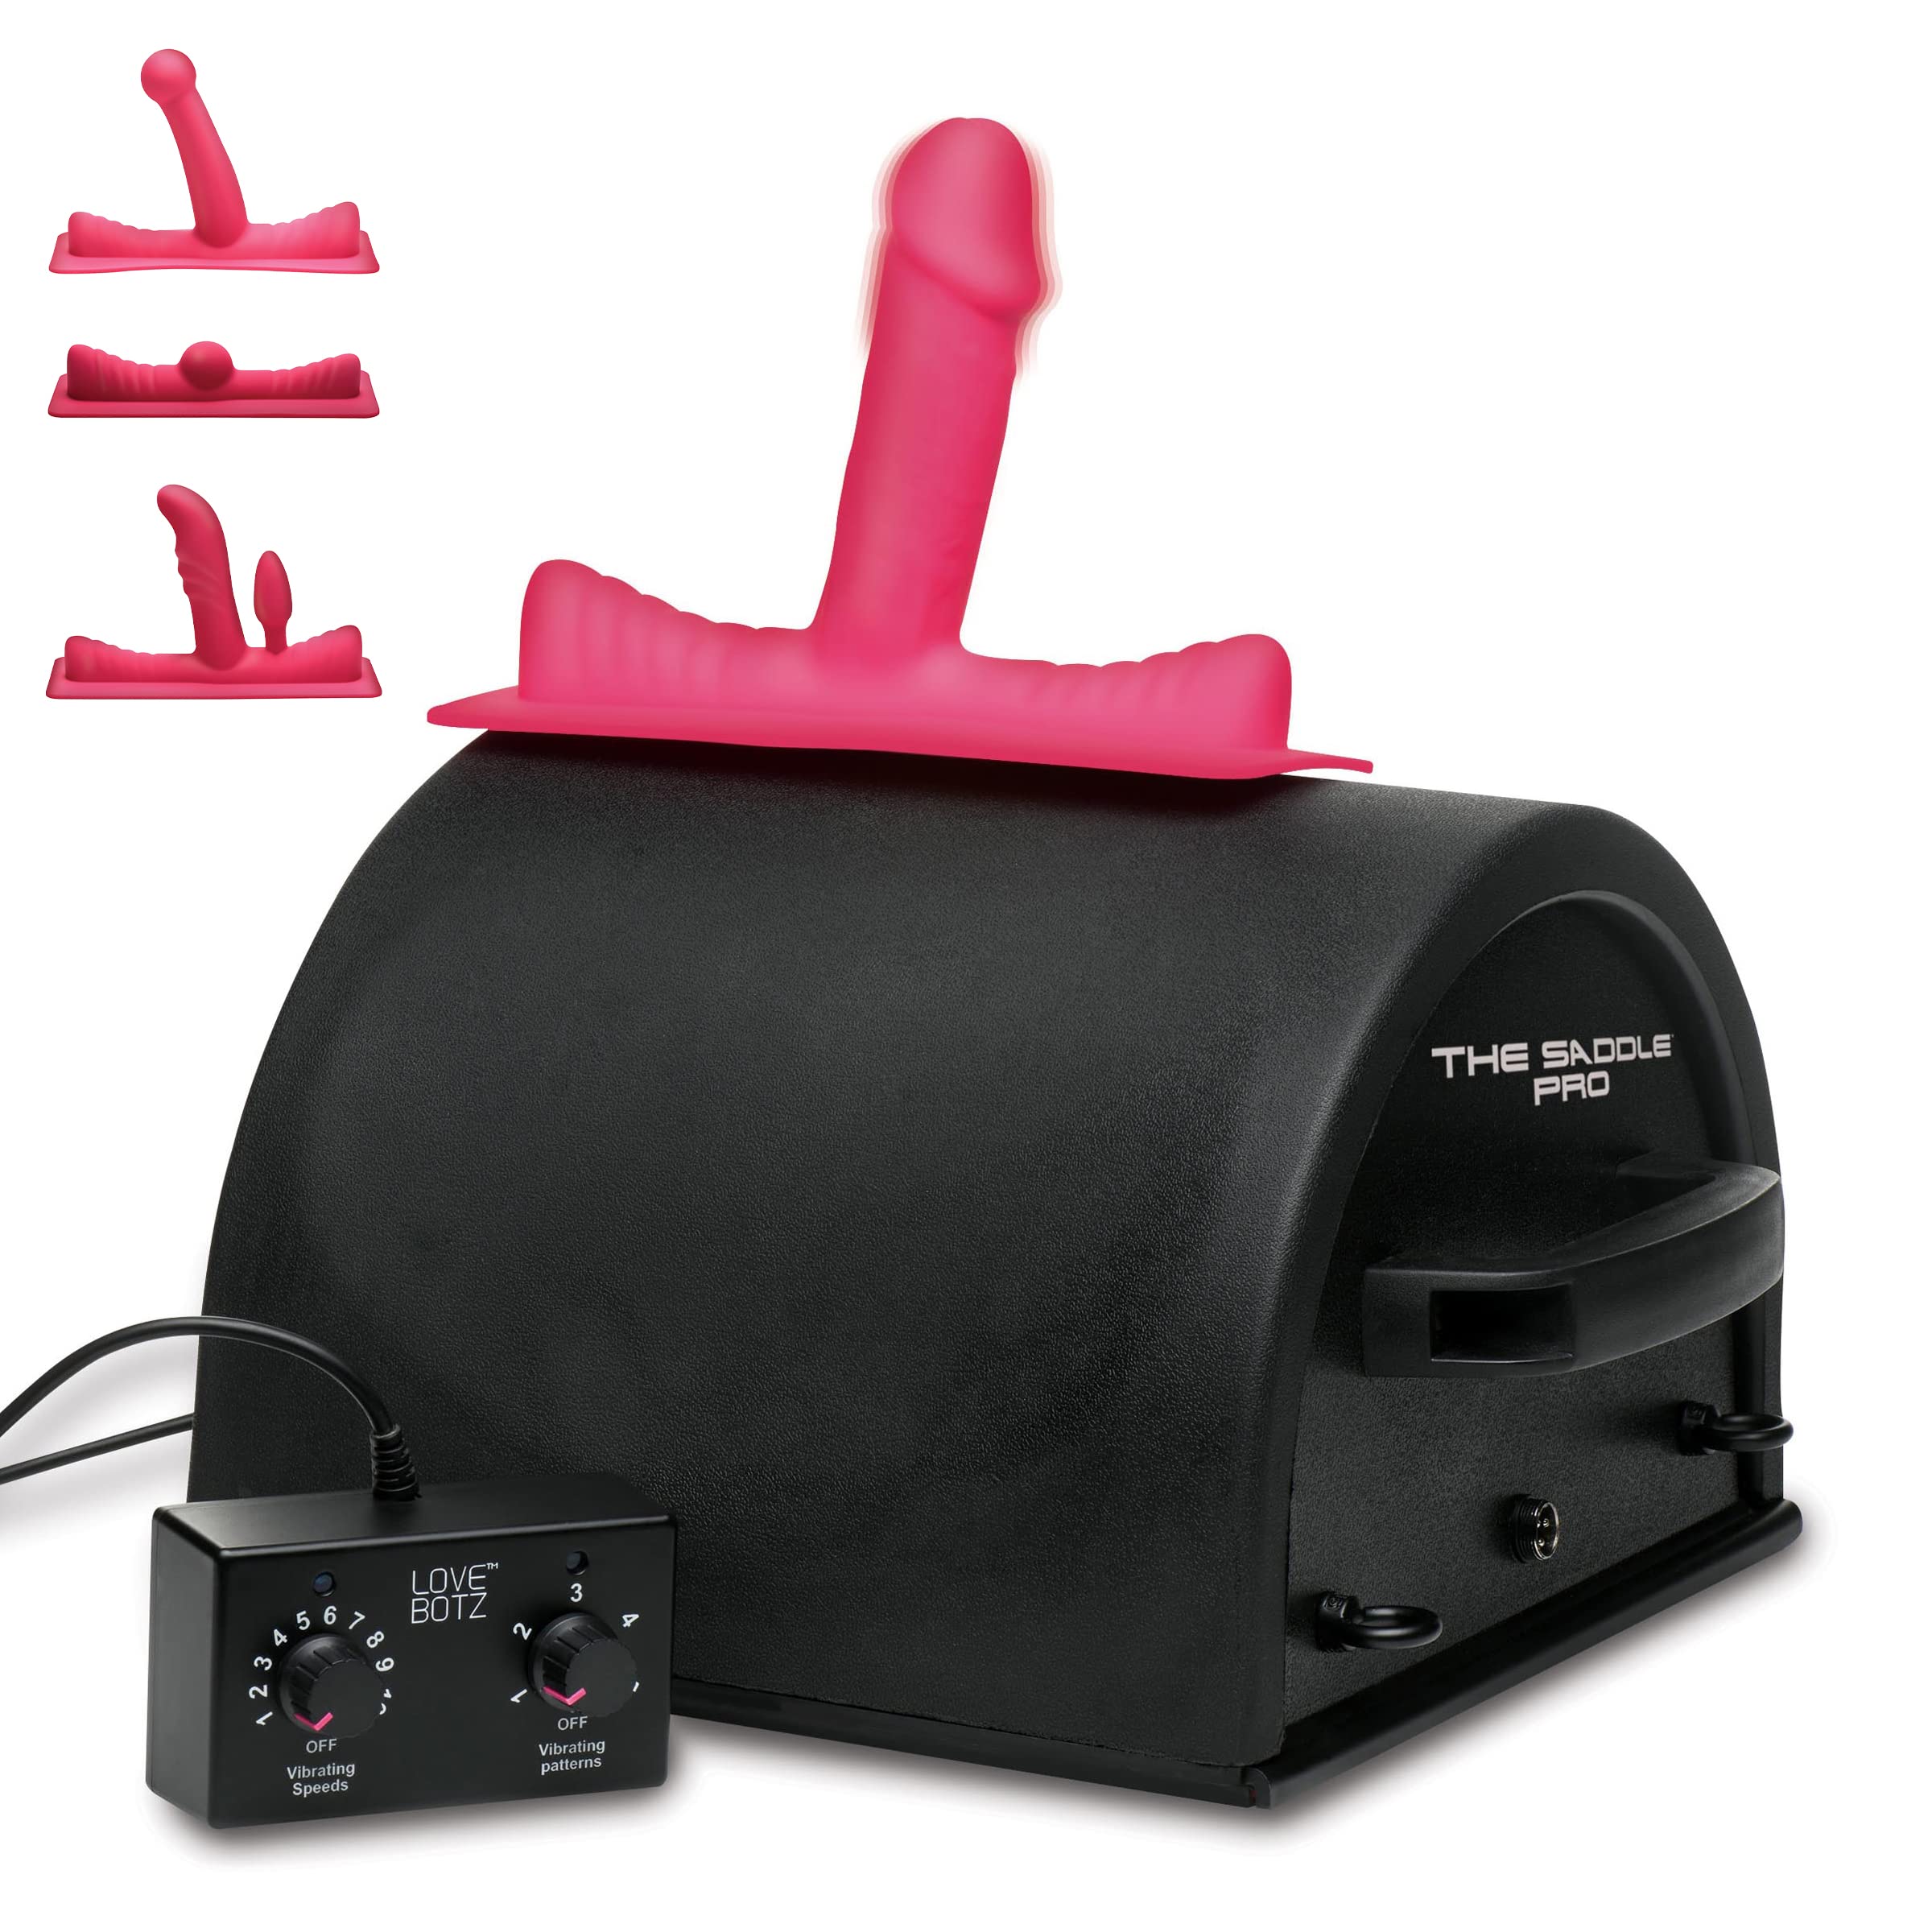 Love Botz 50X Saddle Pro Sex Machine With 4 Silicone Dildo Attachments –  Personalcrave